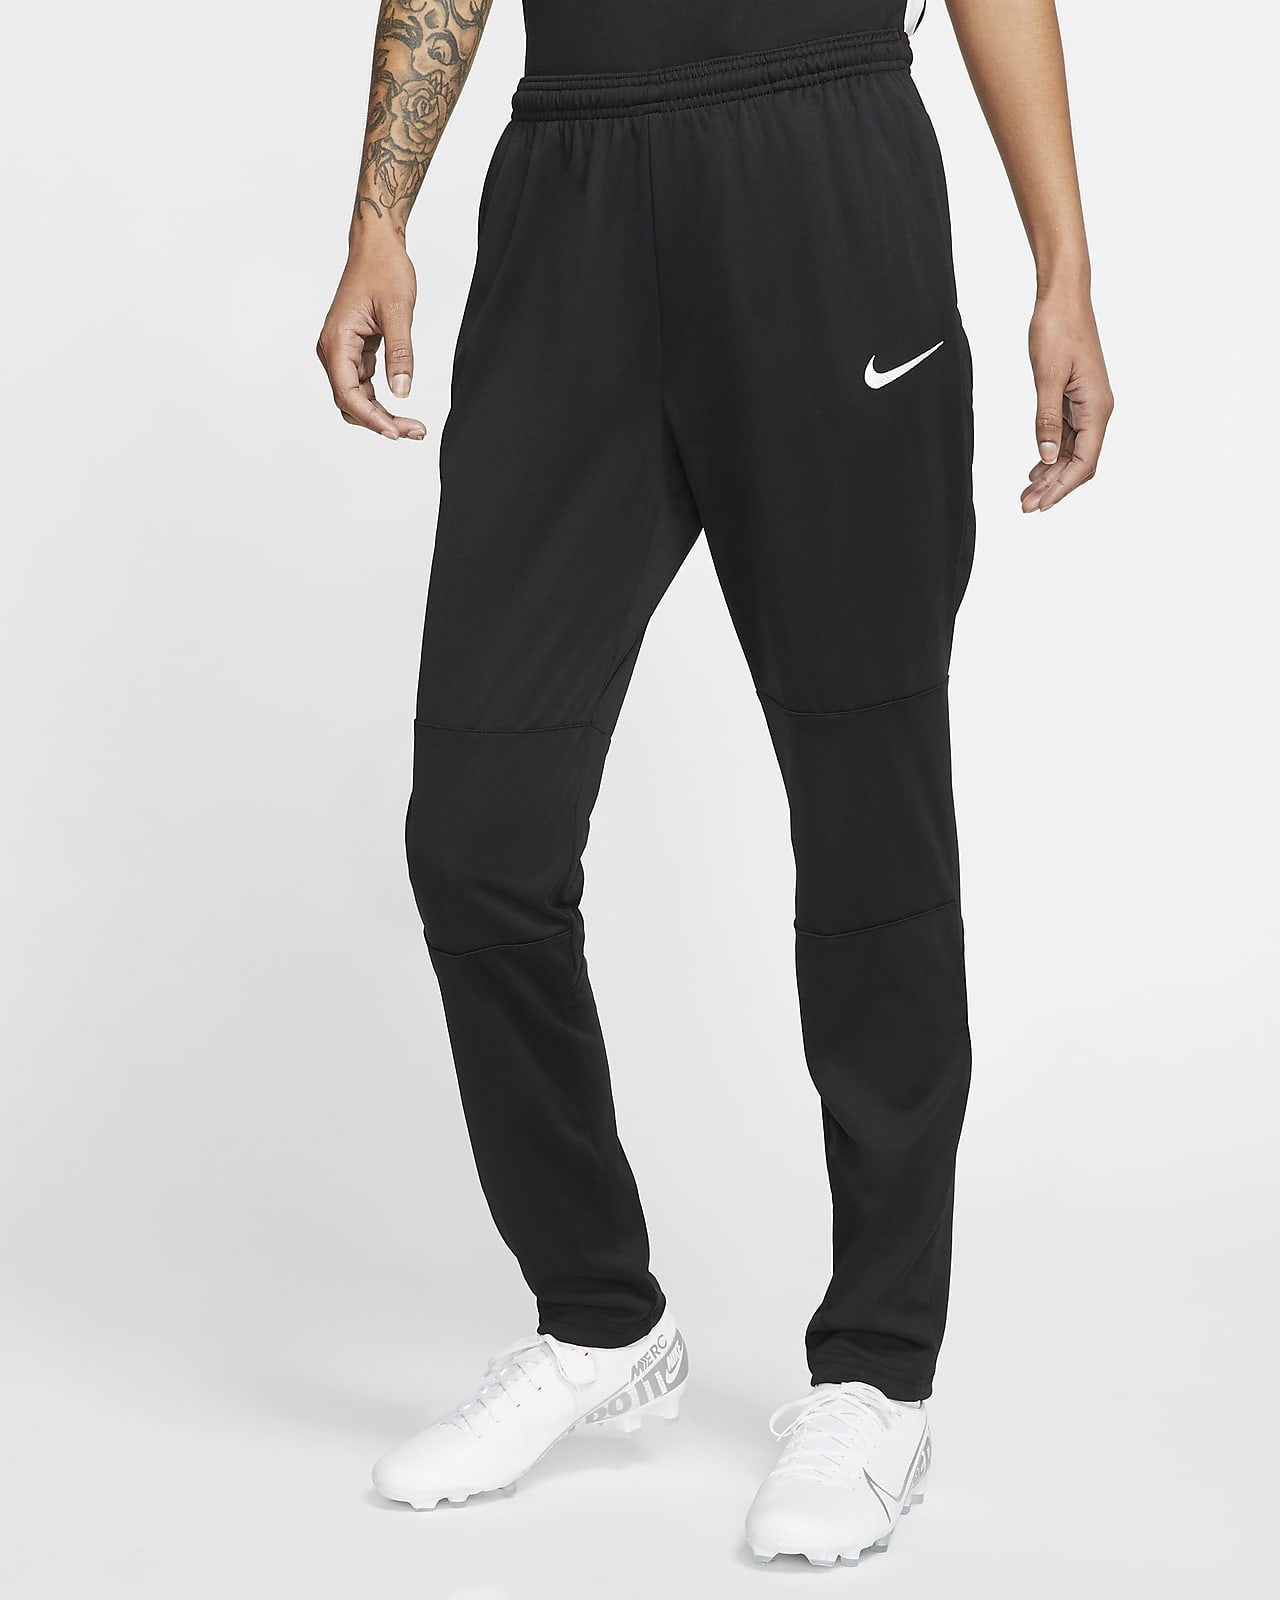 Nike Dri-FIT Women's Soccer Pants. Nike.com